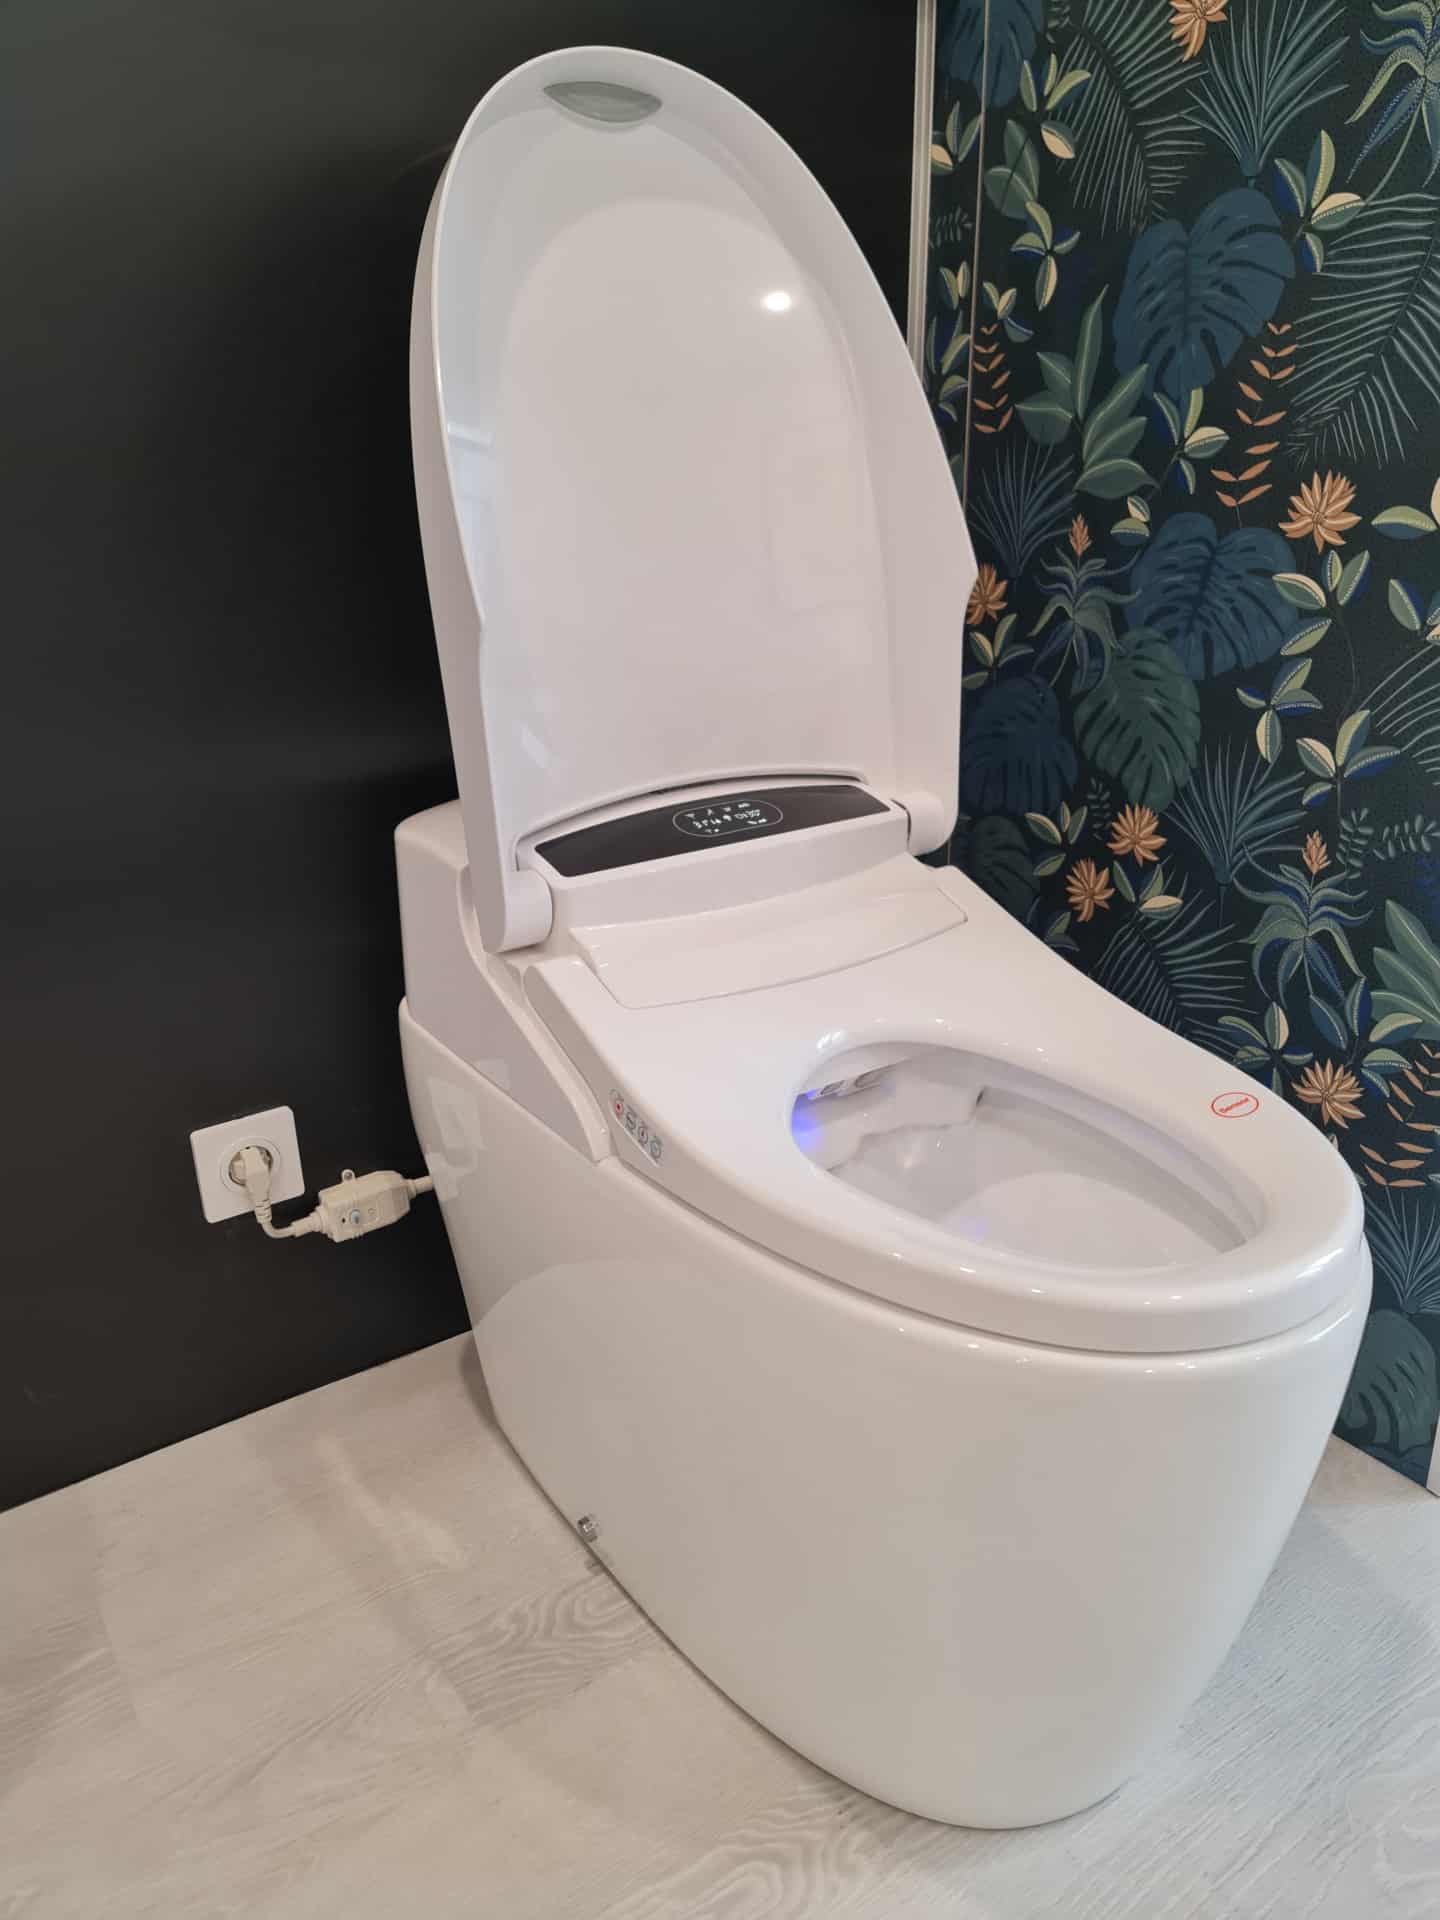 Les avantages du WC japonais pour les seniors - Resobain